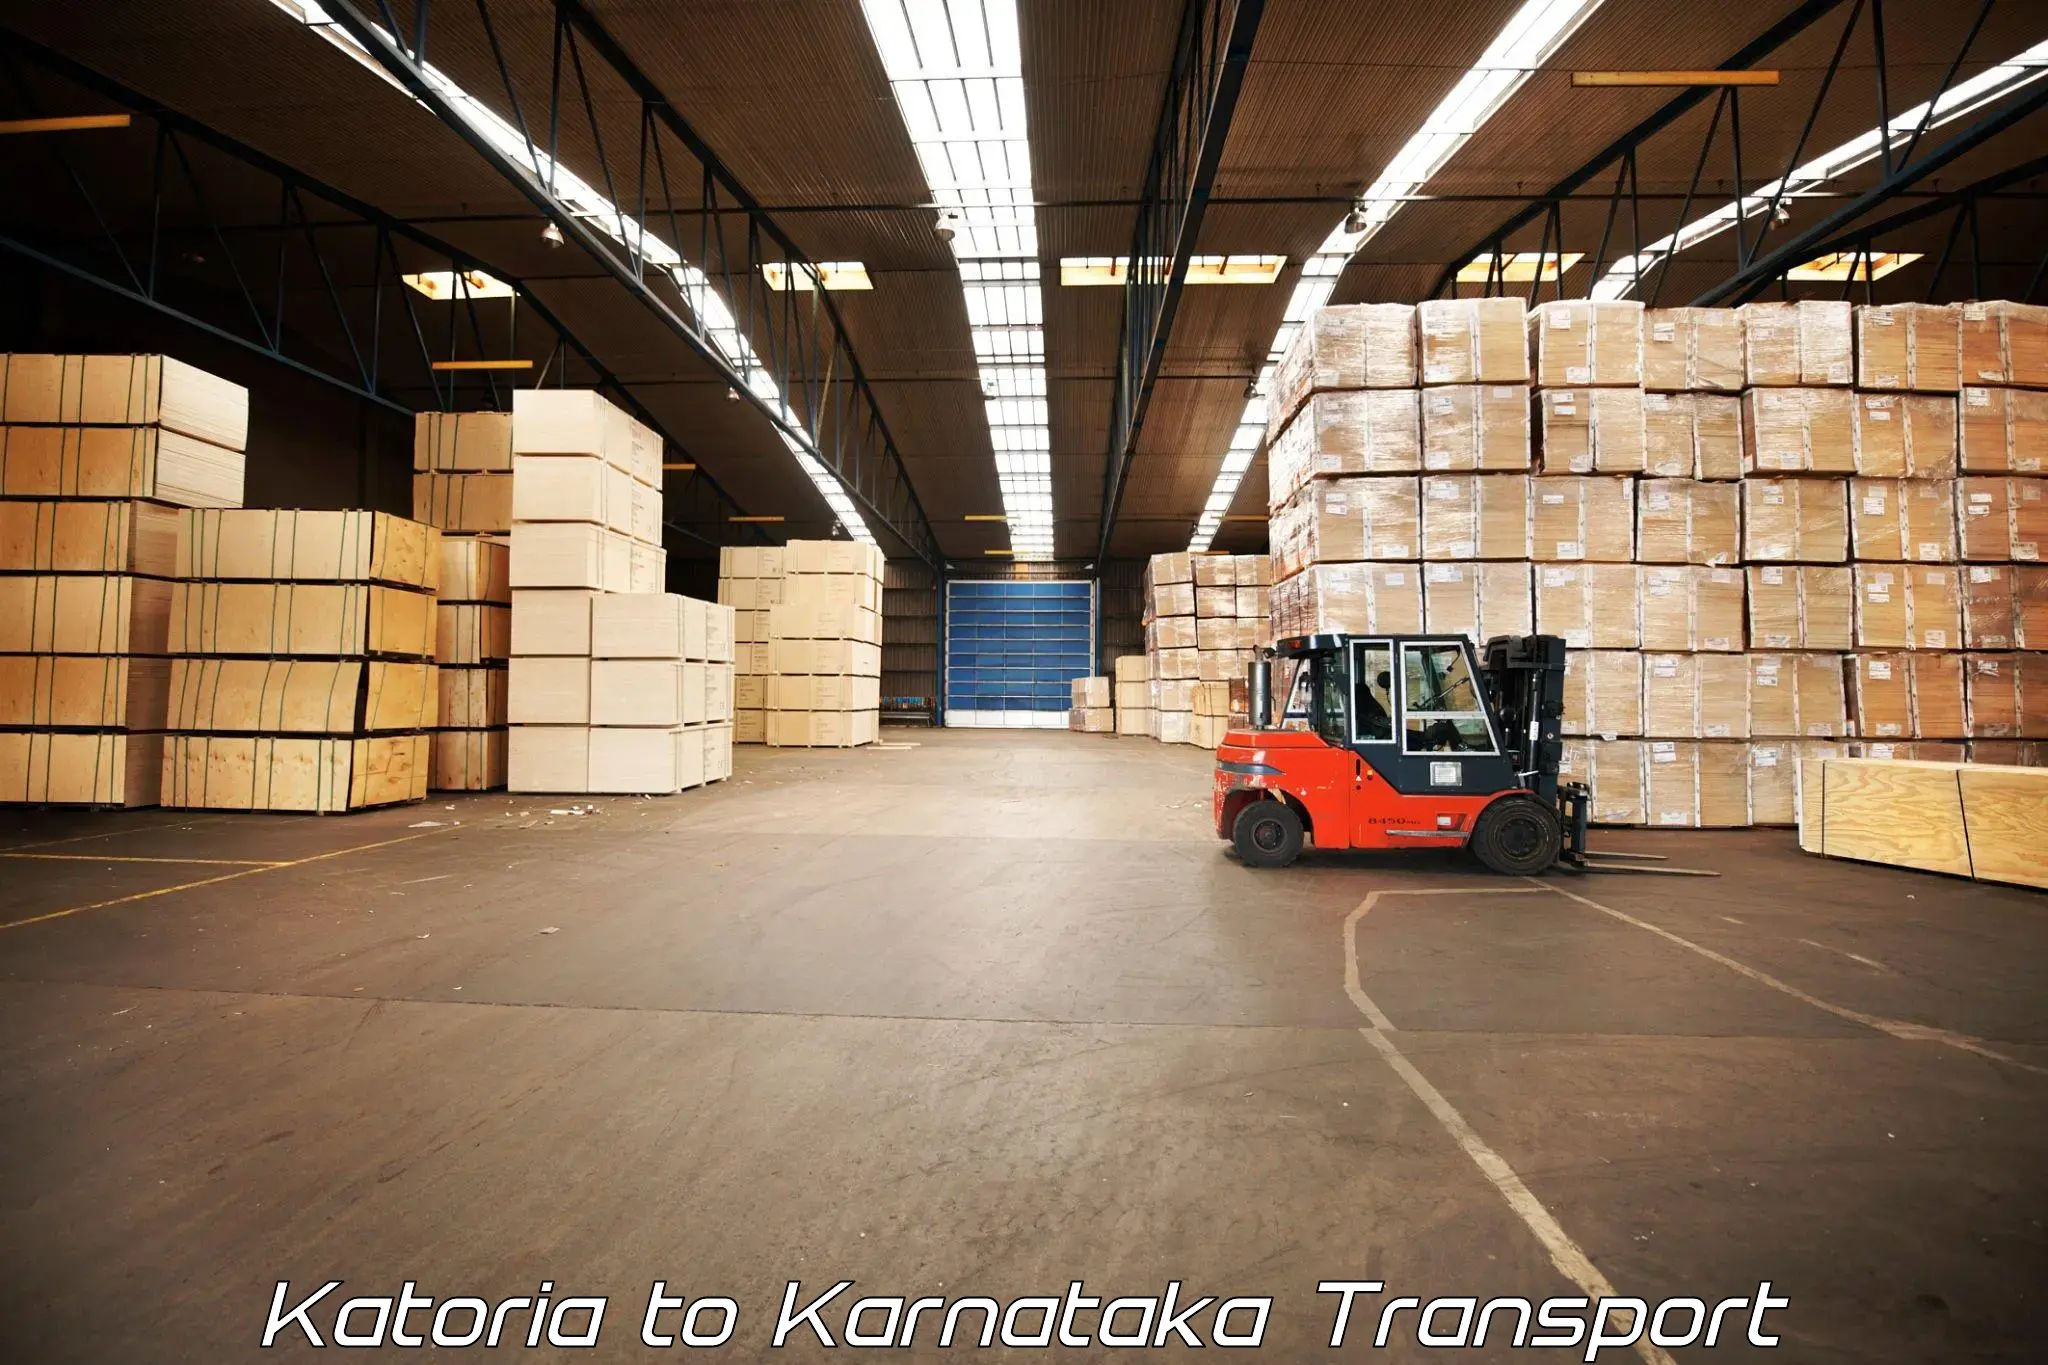 Air freight transport services in Katoria to Basavakalyan